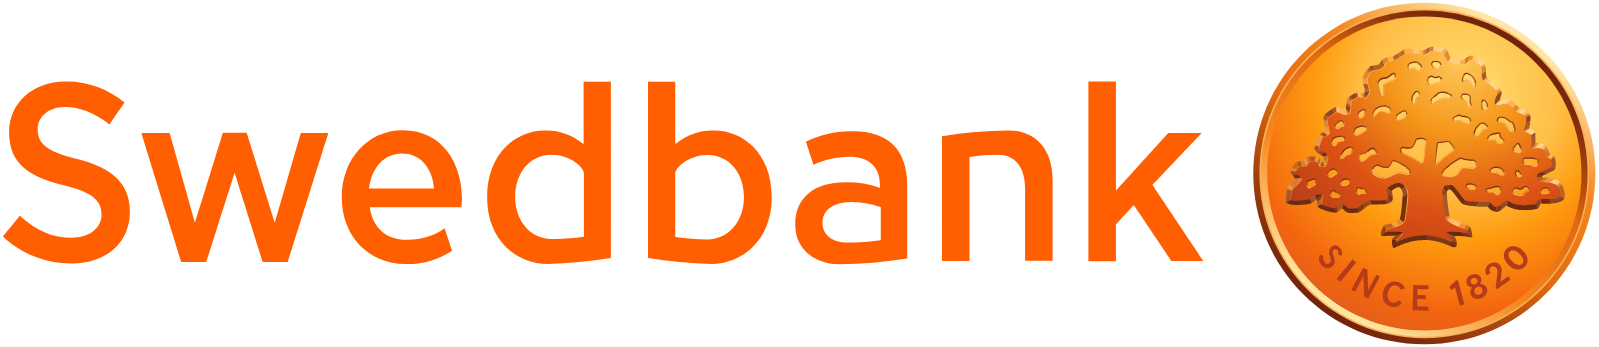 Swedbank logo large (transparent PNG)